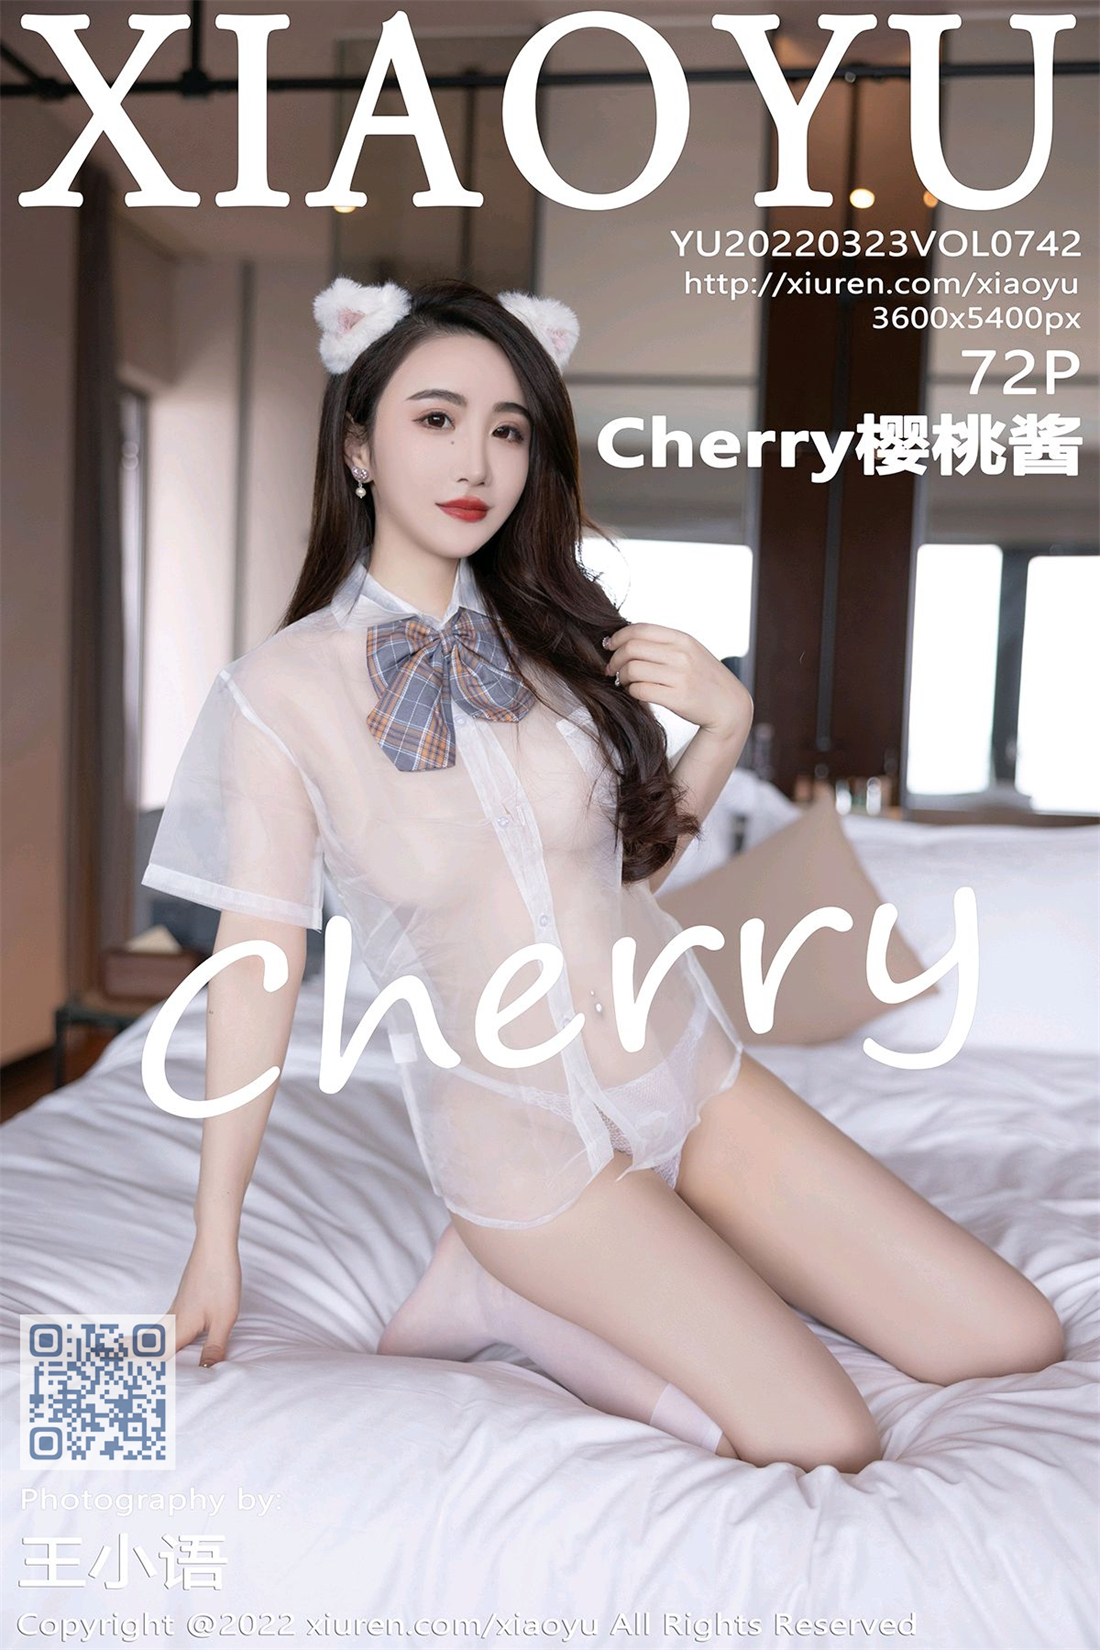 [XIAOYU语画界] 2022.03.23 Vol.742 Cherry樱桃酱 白色上衣[72P/599MB]